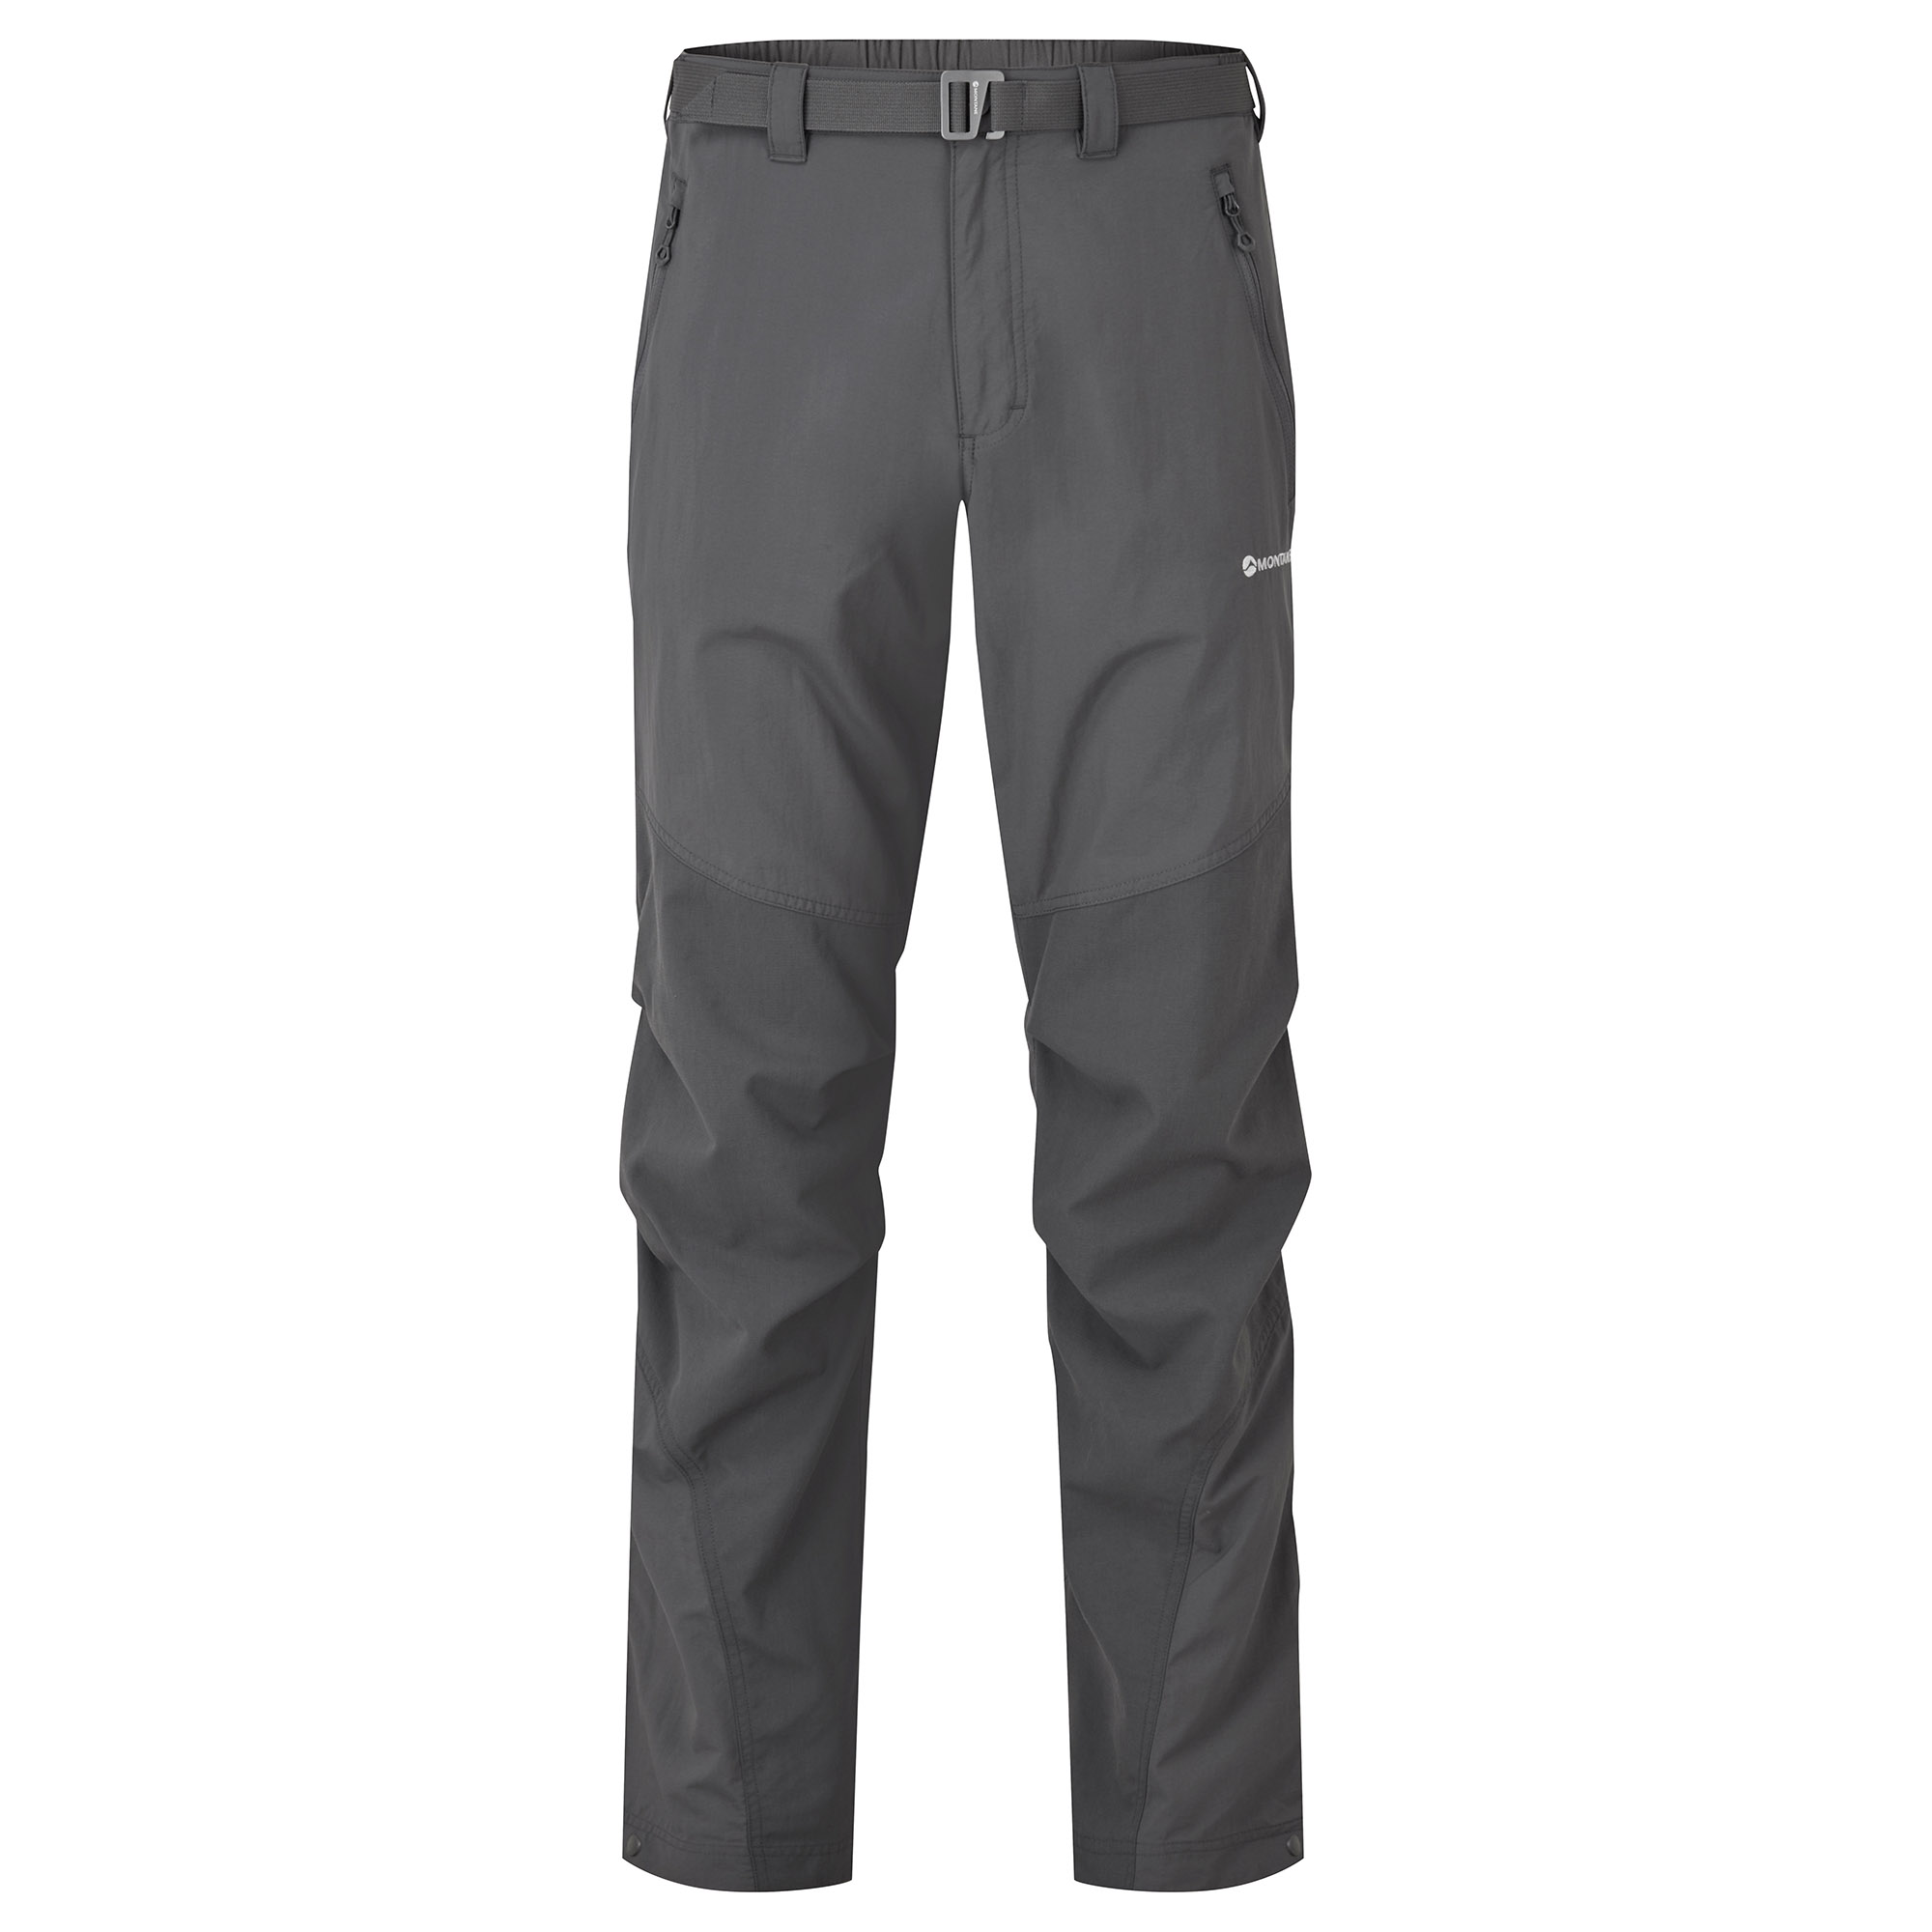 Montane pánské softshellové kalhoty Terra Pants - Prodloužené Nohavice Barva: Slate, Velikost: 30